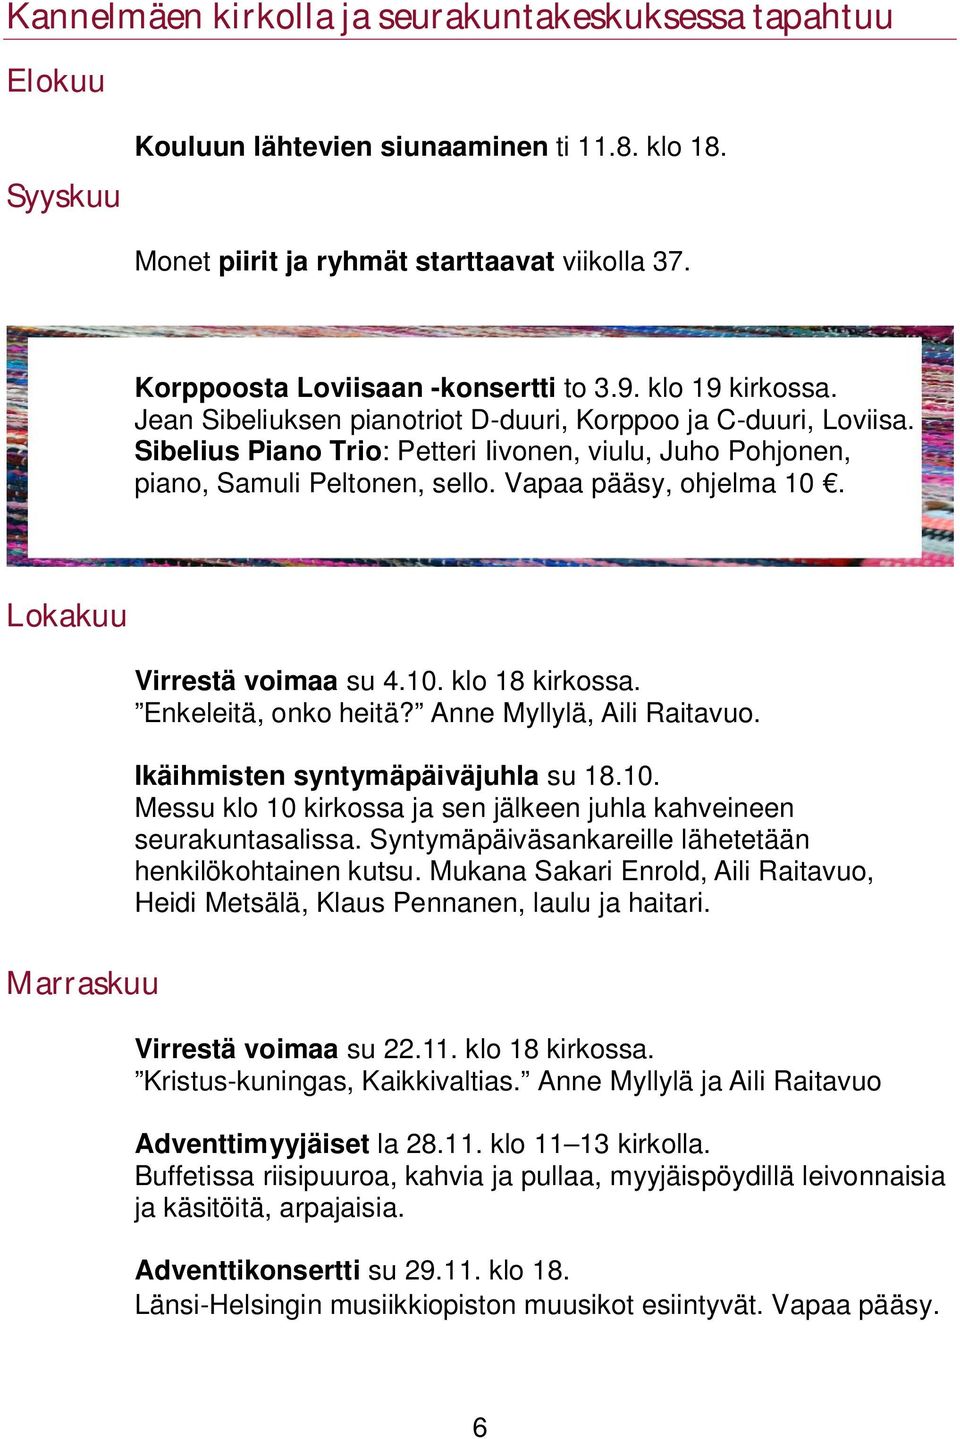 Sibelius Piano Trio: Petteri Iivonen, viulu, Juho Pohjonen, piano, Samuli Peltonen, sello. Vapaa pääsy, ohjelma 10. Lokakuu Virrestä voimaa su 4.10. klo 18 kirkossa. Enkeleitä, onko heitä?